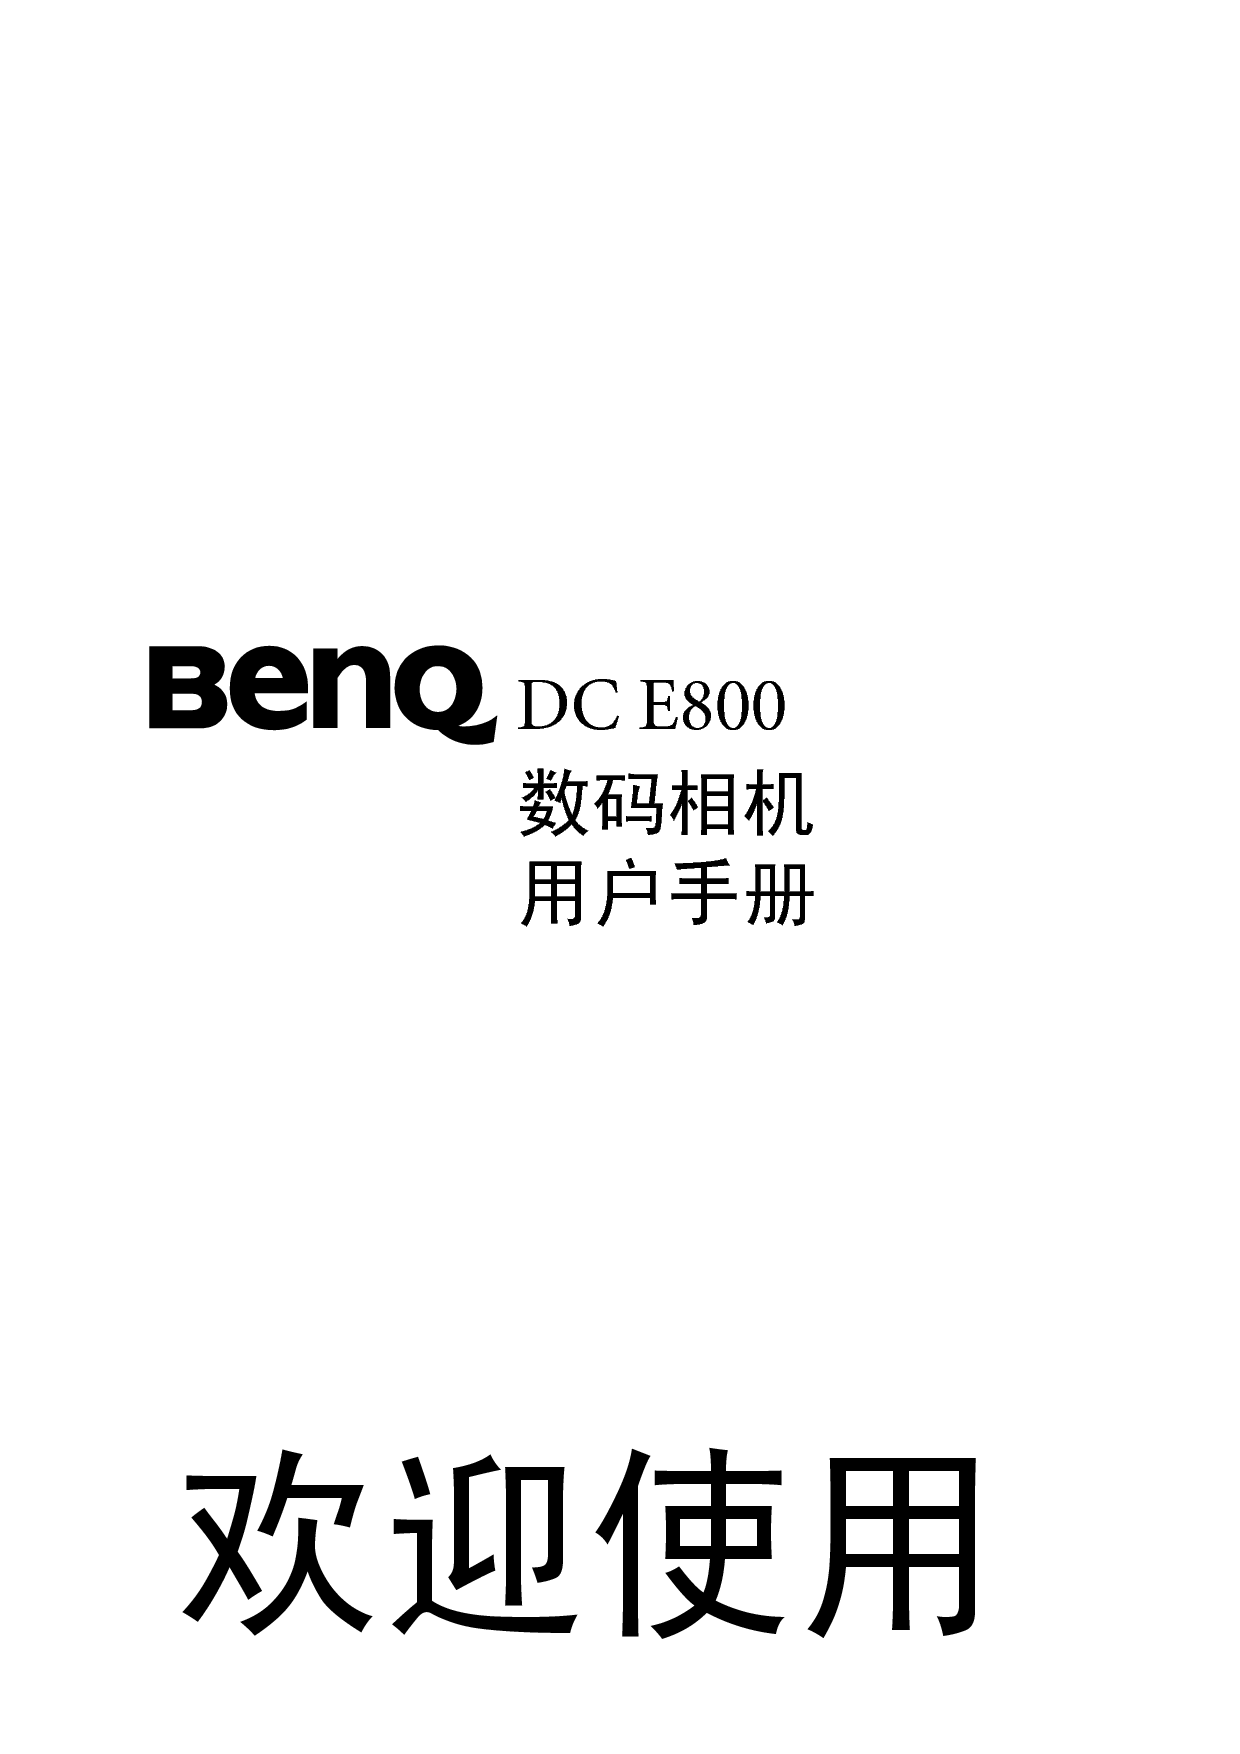 明基 Benq DC-E800 使用手册 封面